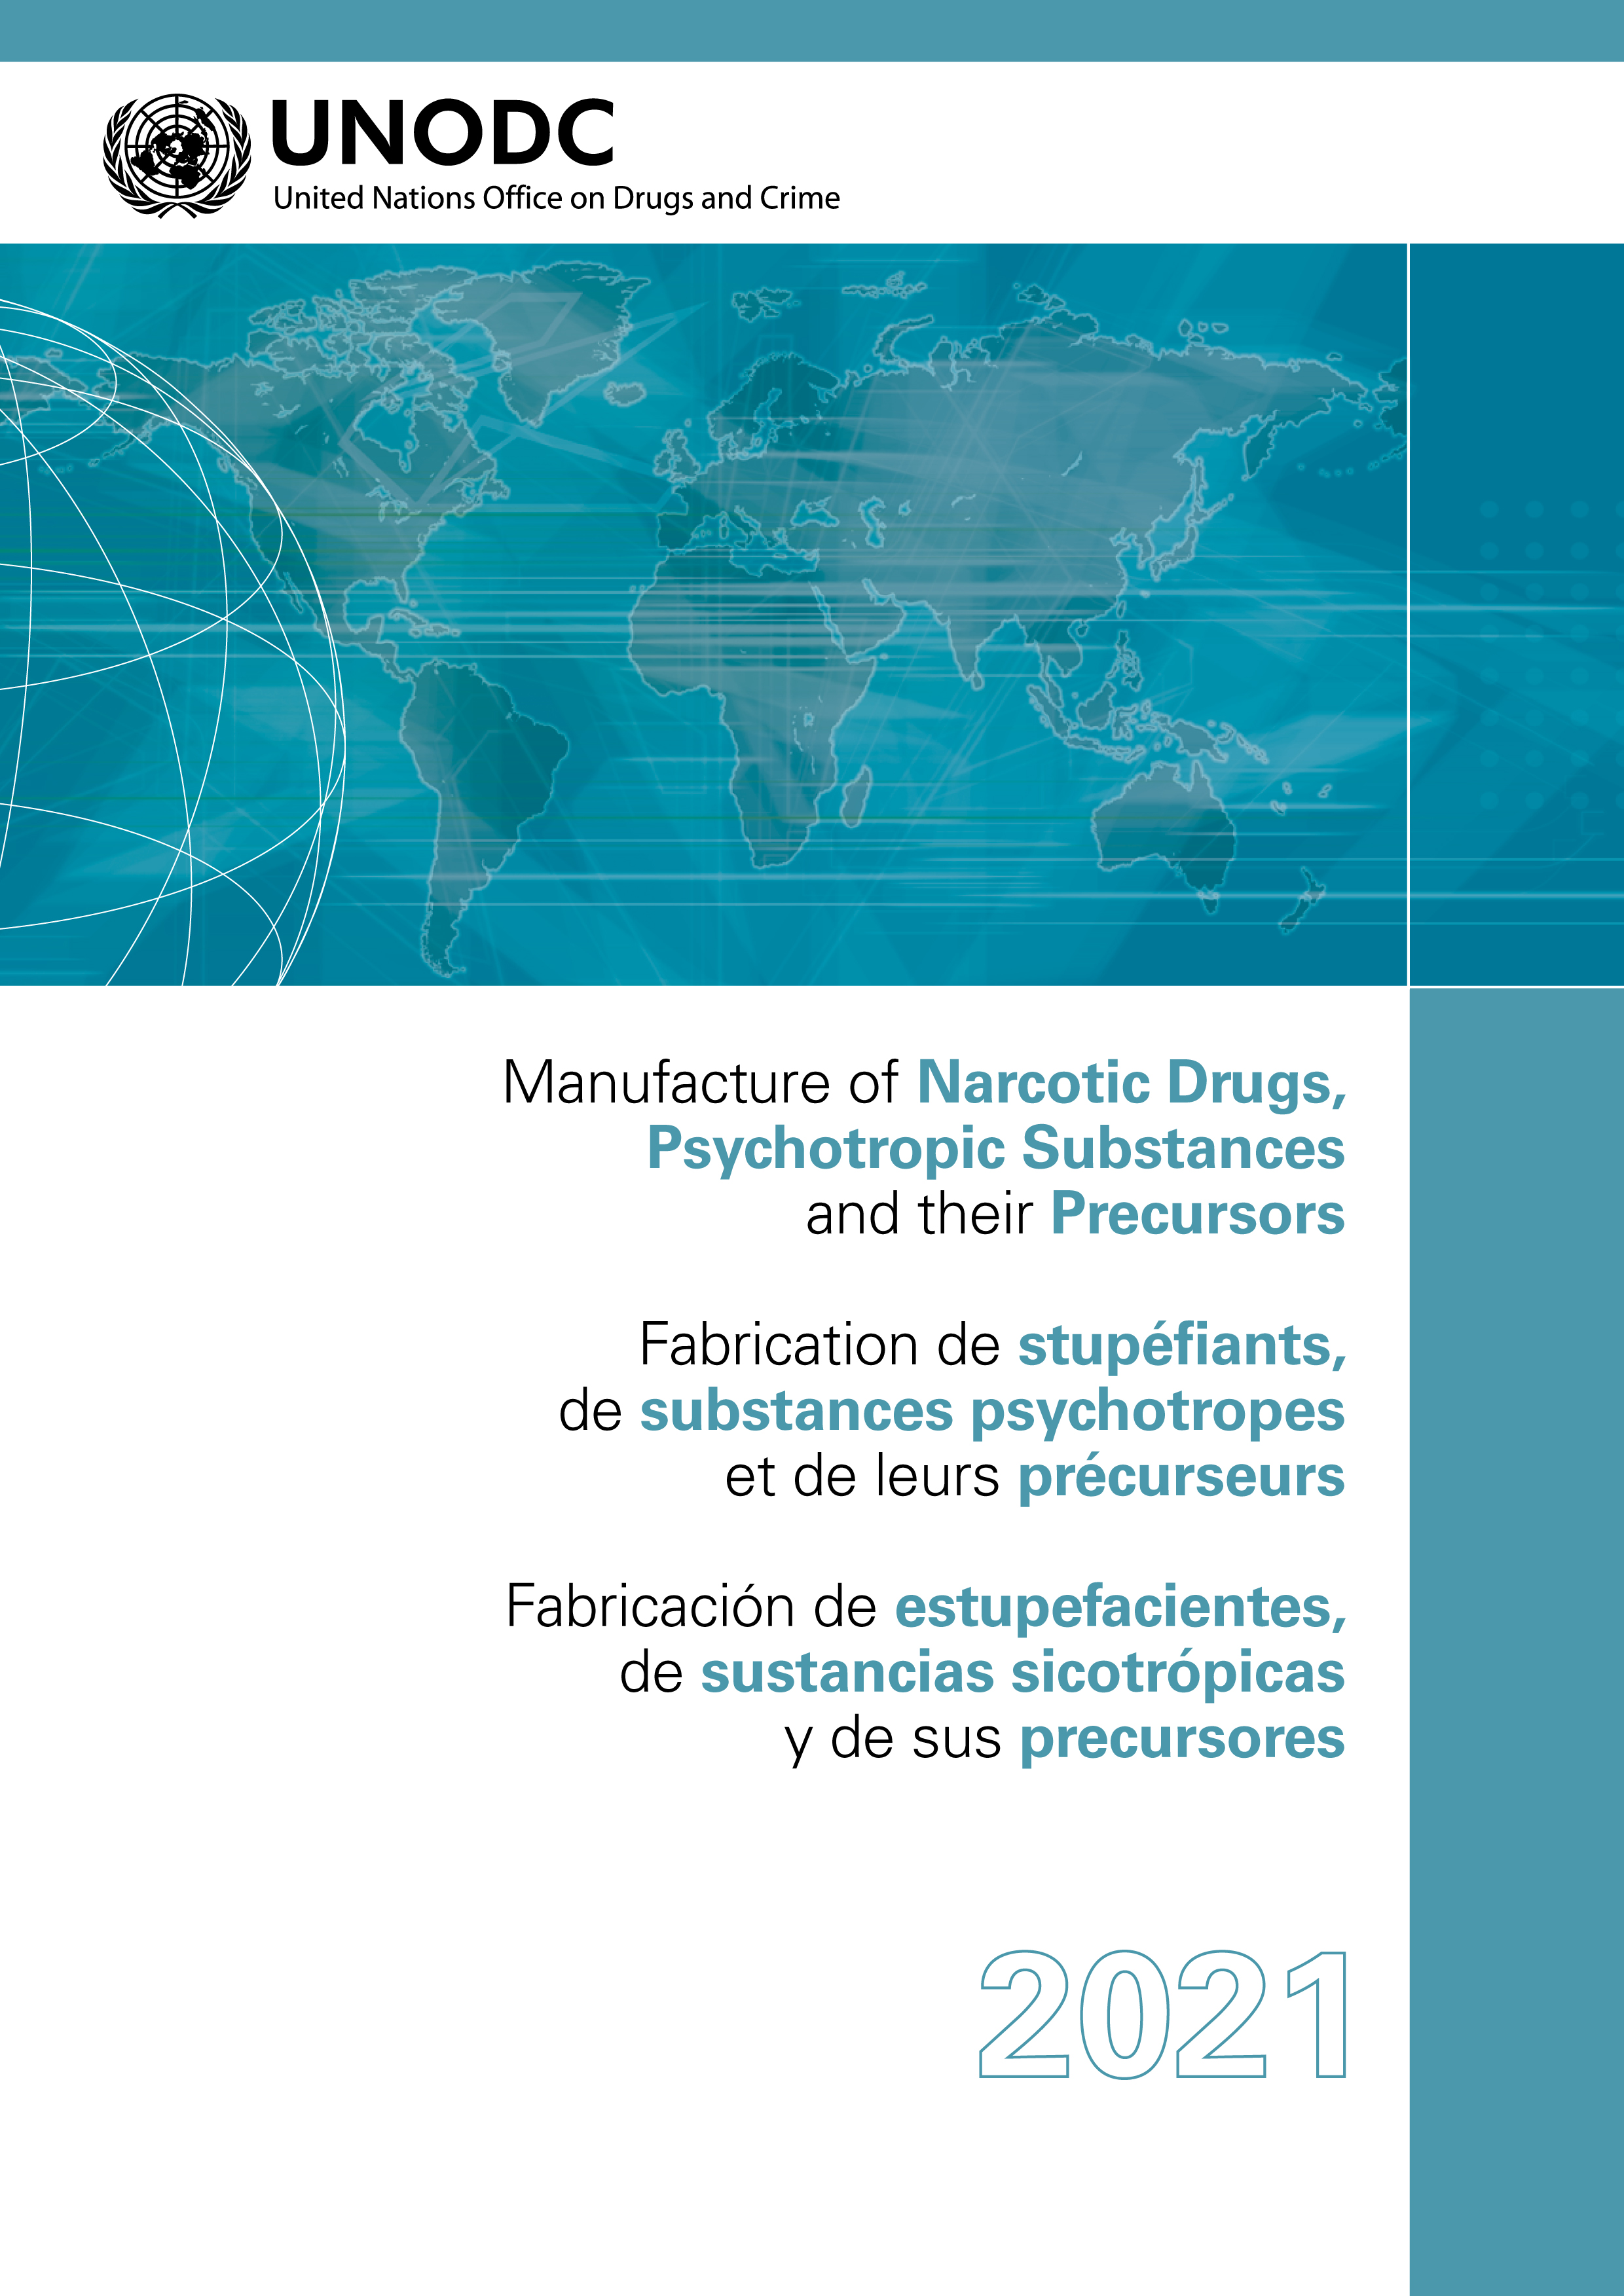 image of Fabricación de estupefacientes, de sustancias sicotrópicas y de sus precursores 2021